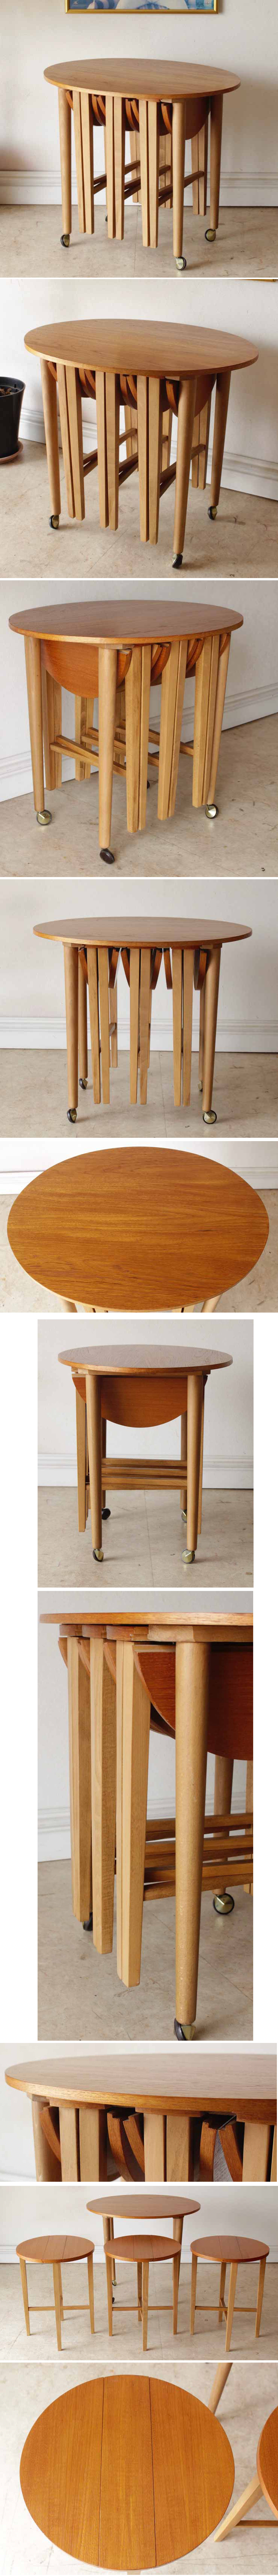 ビンテージアンティーク・サイドテーブル・コーヒーテーブル・ネストテーブル・イギリス製家具